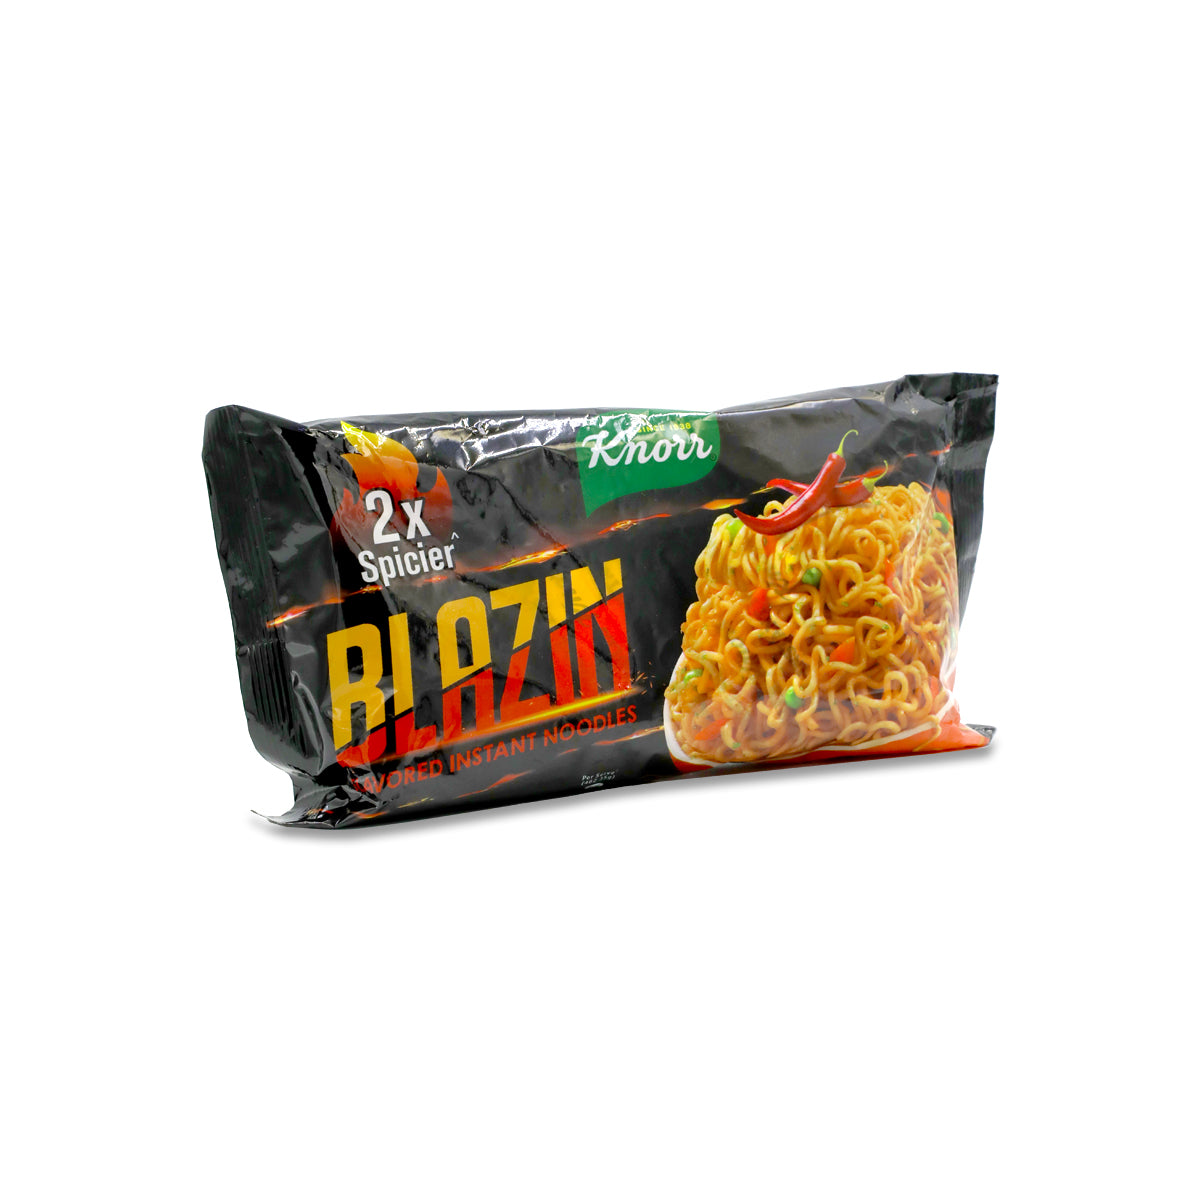 Knorr Blazin Noodles 2x Spicy Review 🔥 Blazing Hot #knorrblazin #blaz